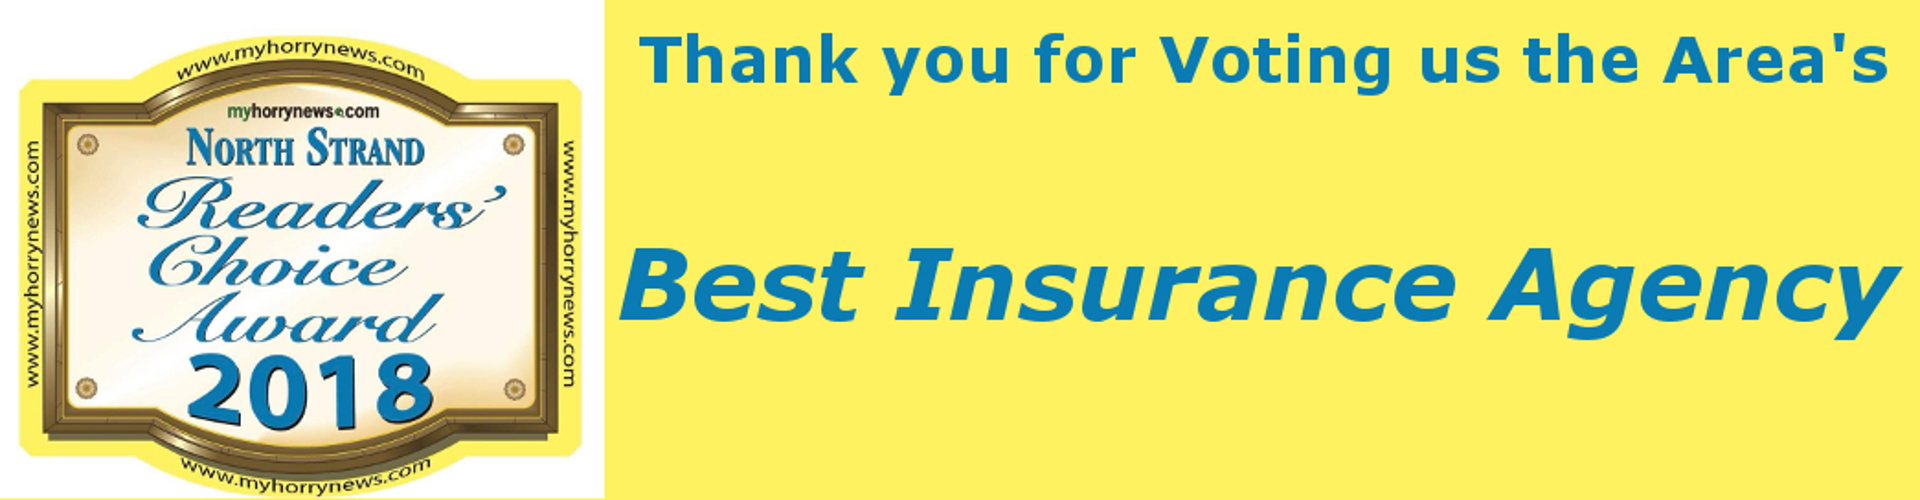 best-insurance-agency-1